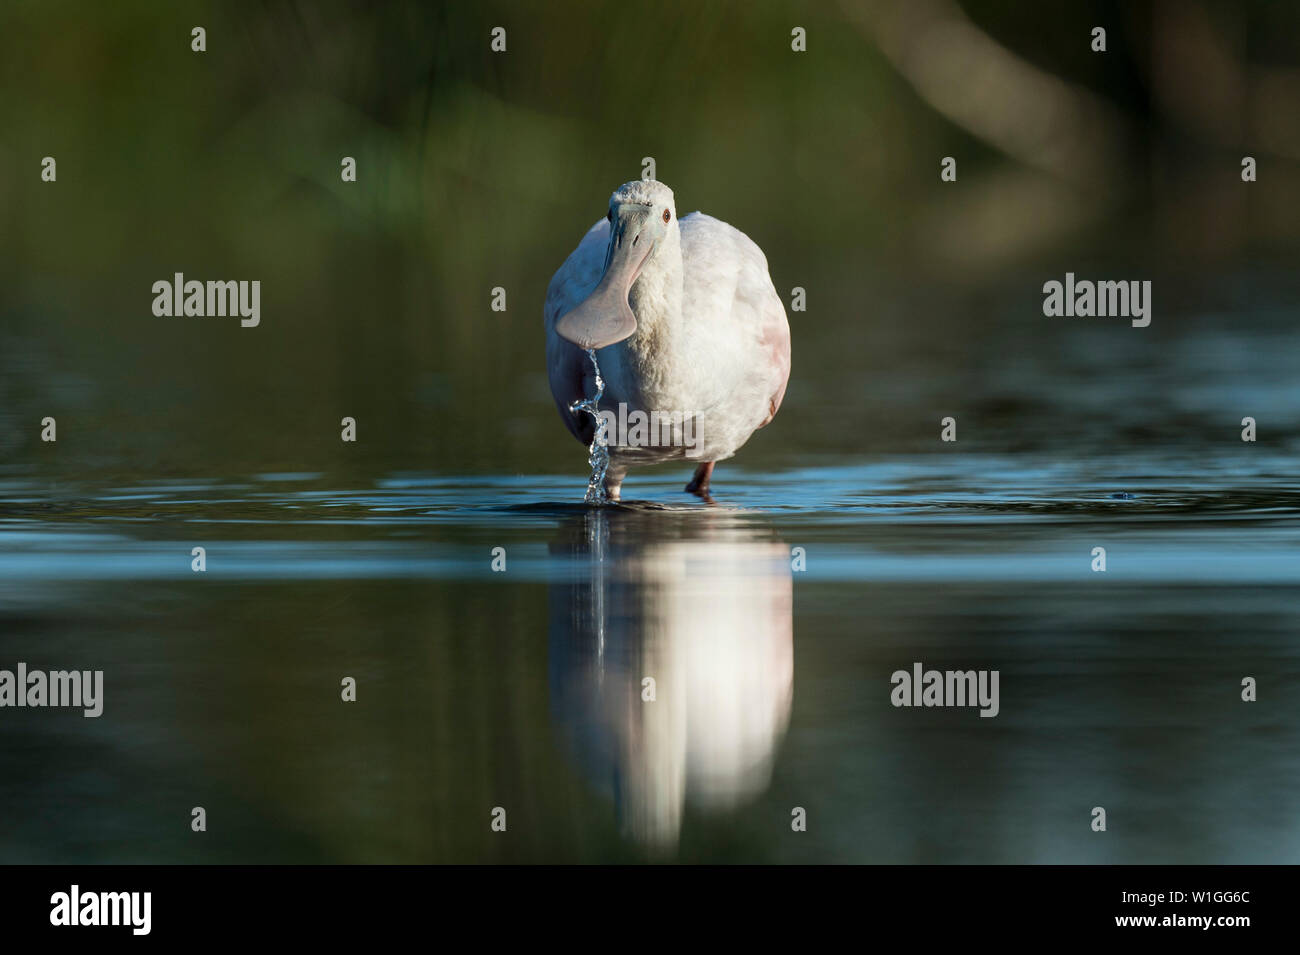 Eine weiße Rosalöffler hat Wasser tropft aus dem breiten Schnabel, wie es im flachen Wasser mit einer Reflexion in den späten Abend Licht steht. Stockfoto